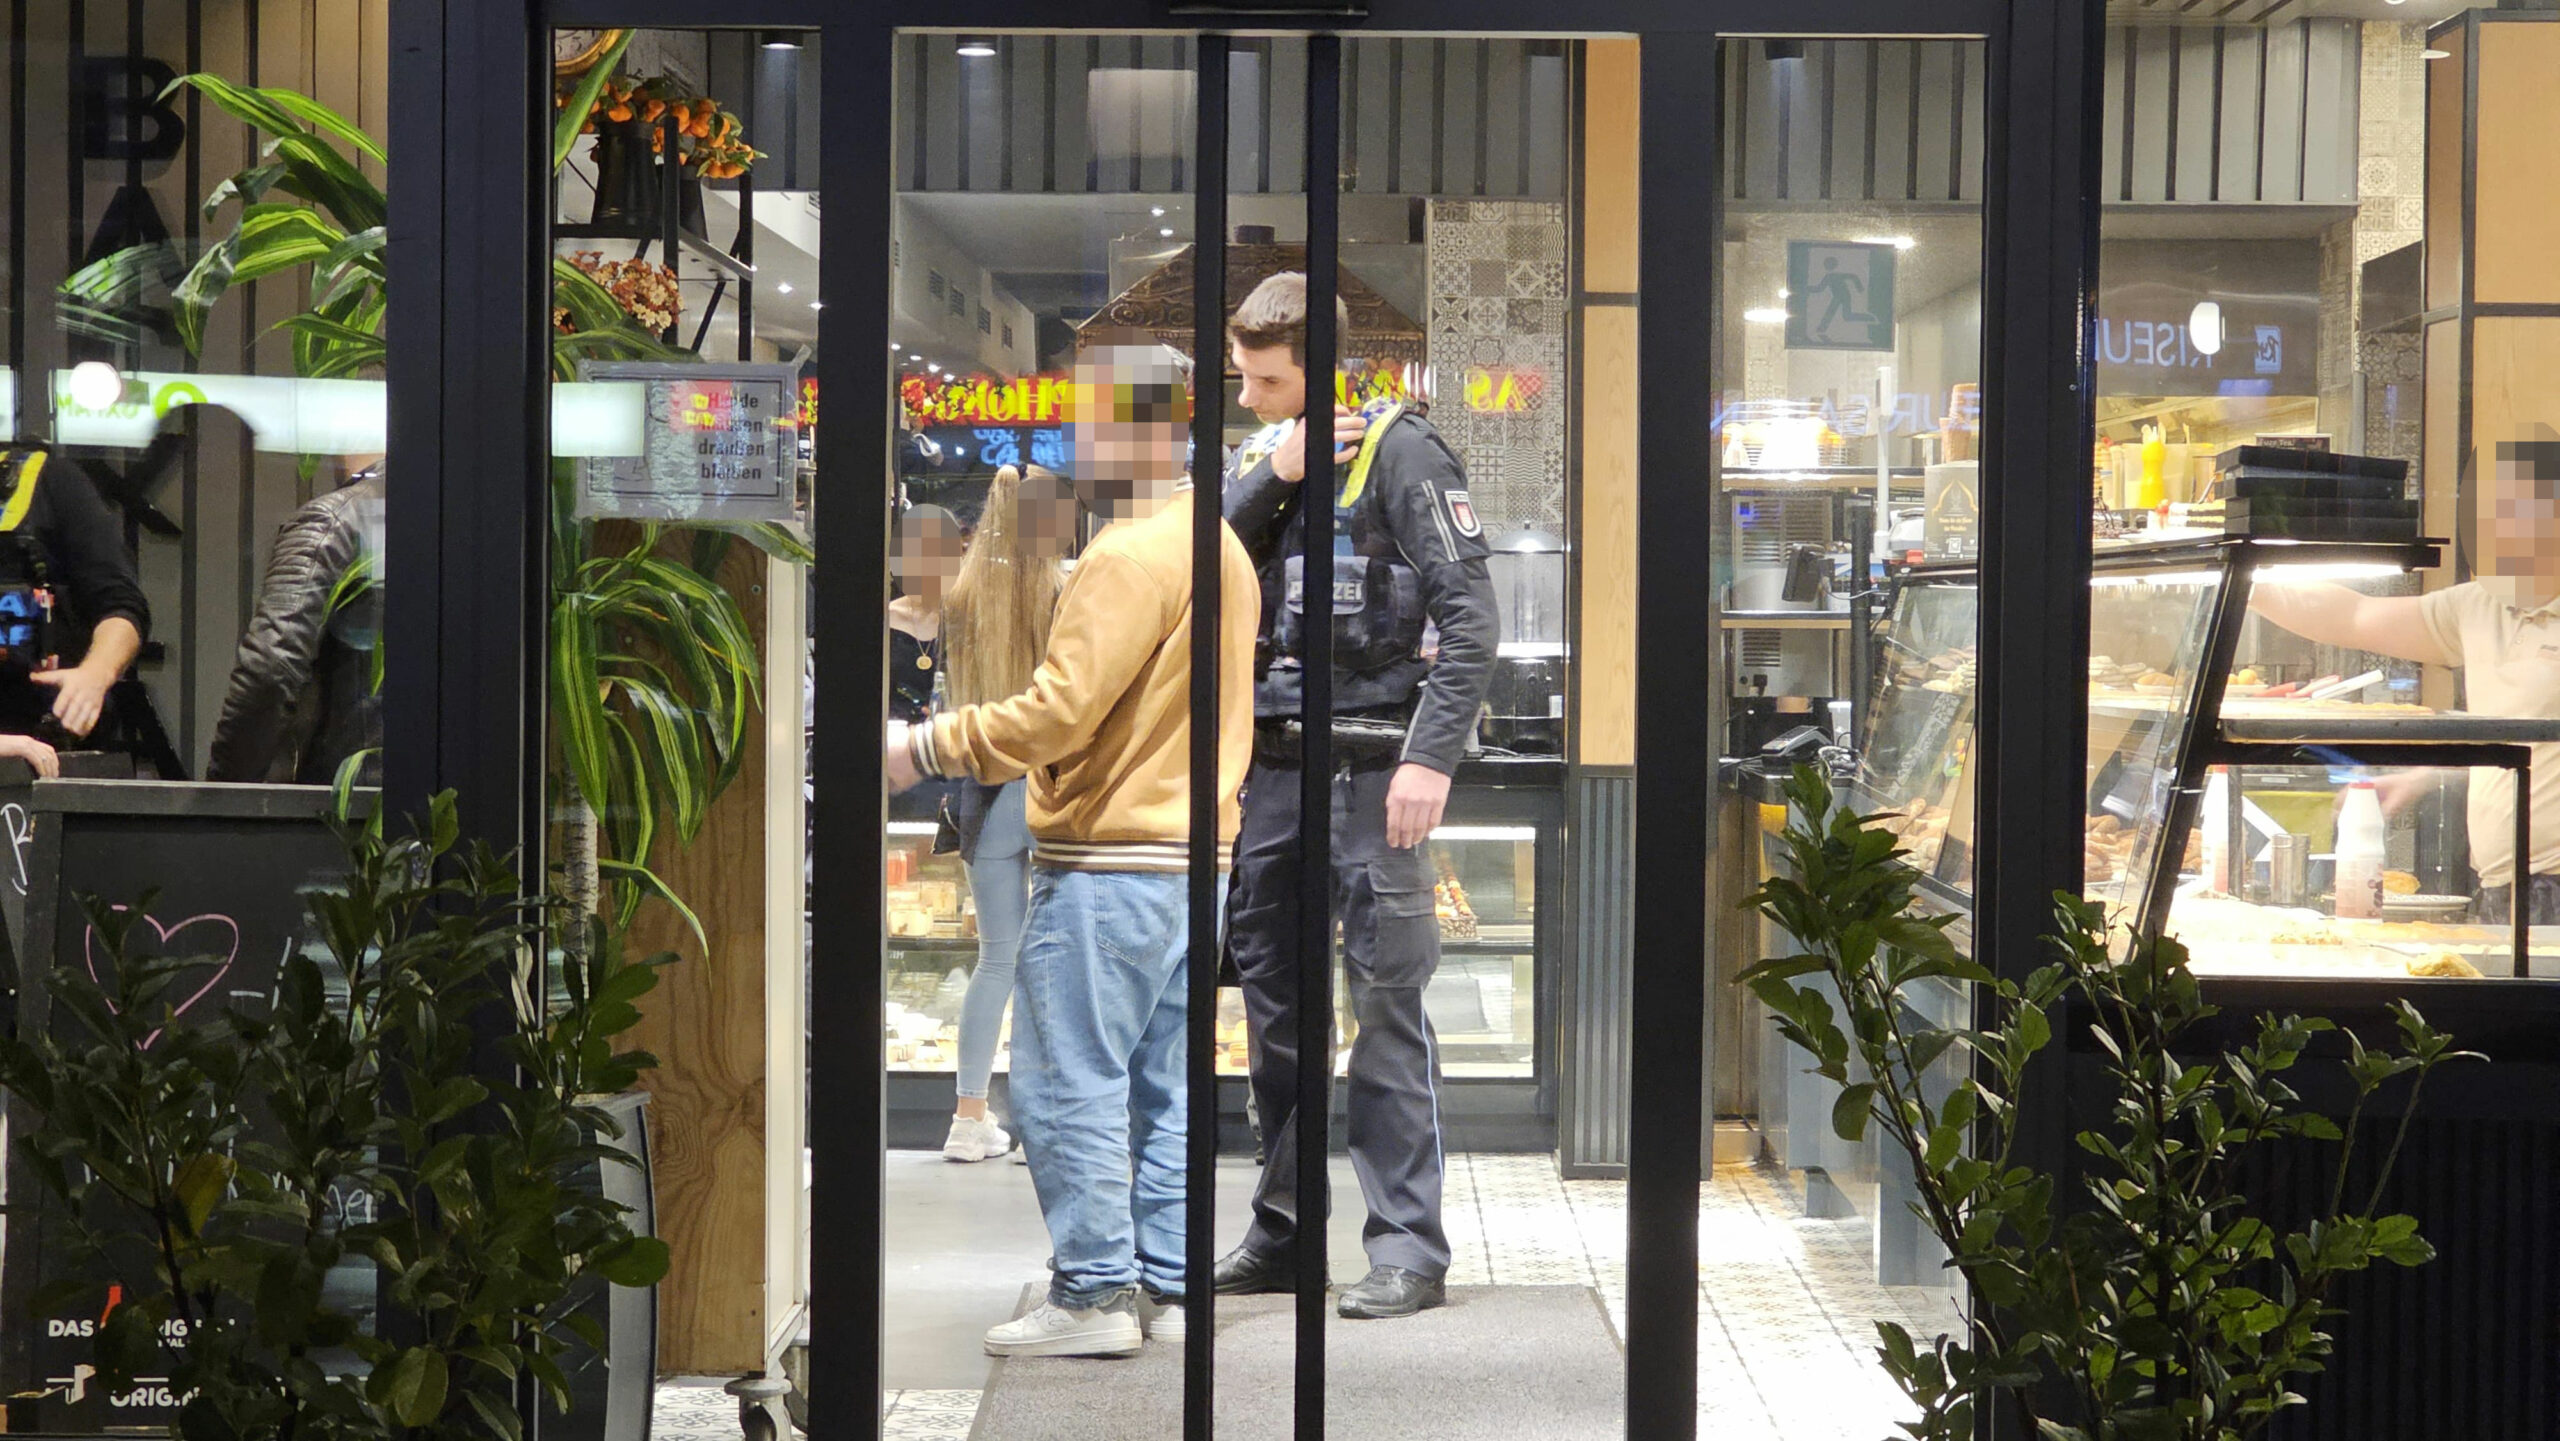 Das Café in Wandsbek, durch die Glastür sieht man Gäste und Polizisten